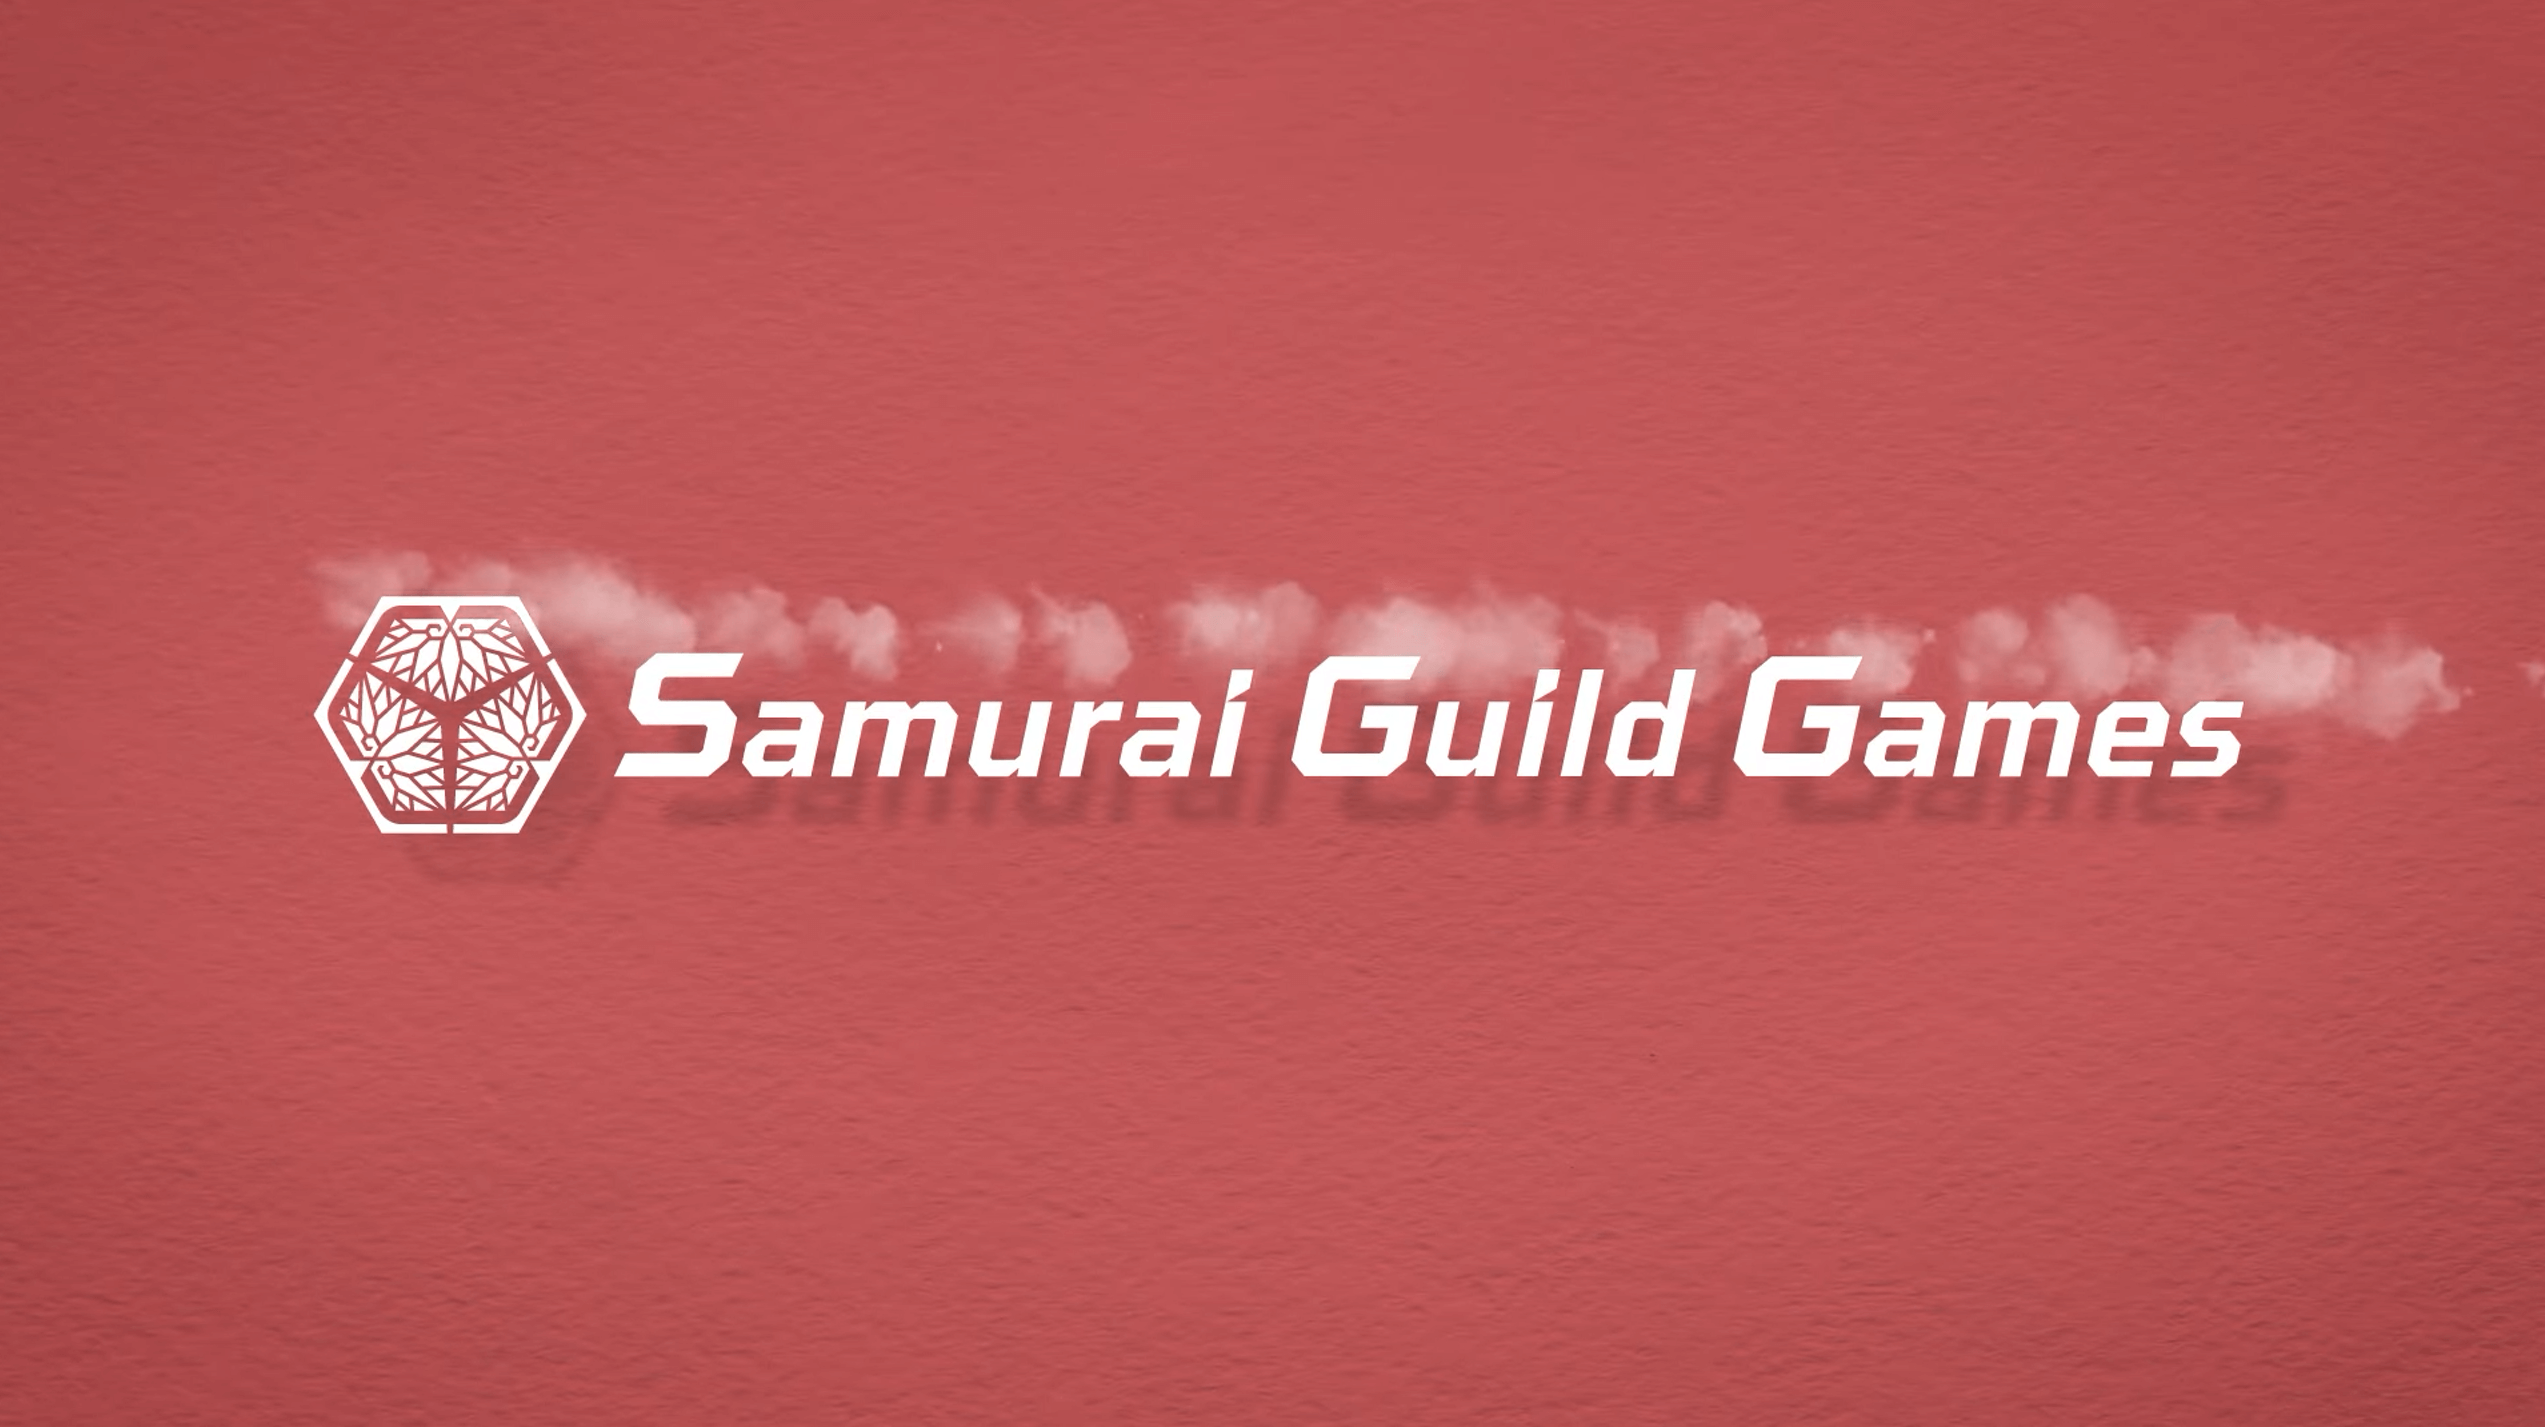 SGG Guild Games